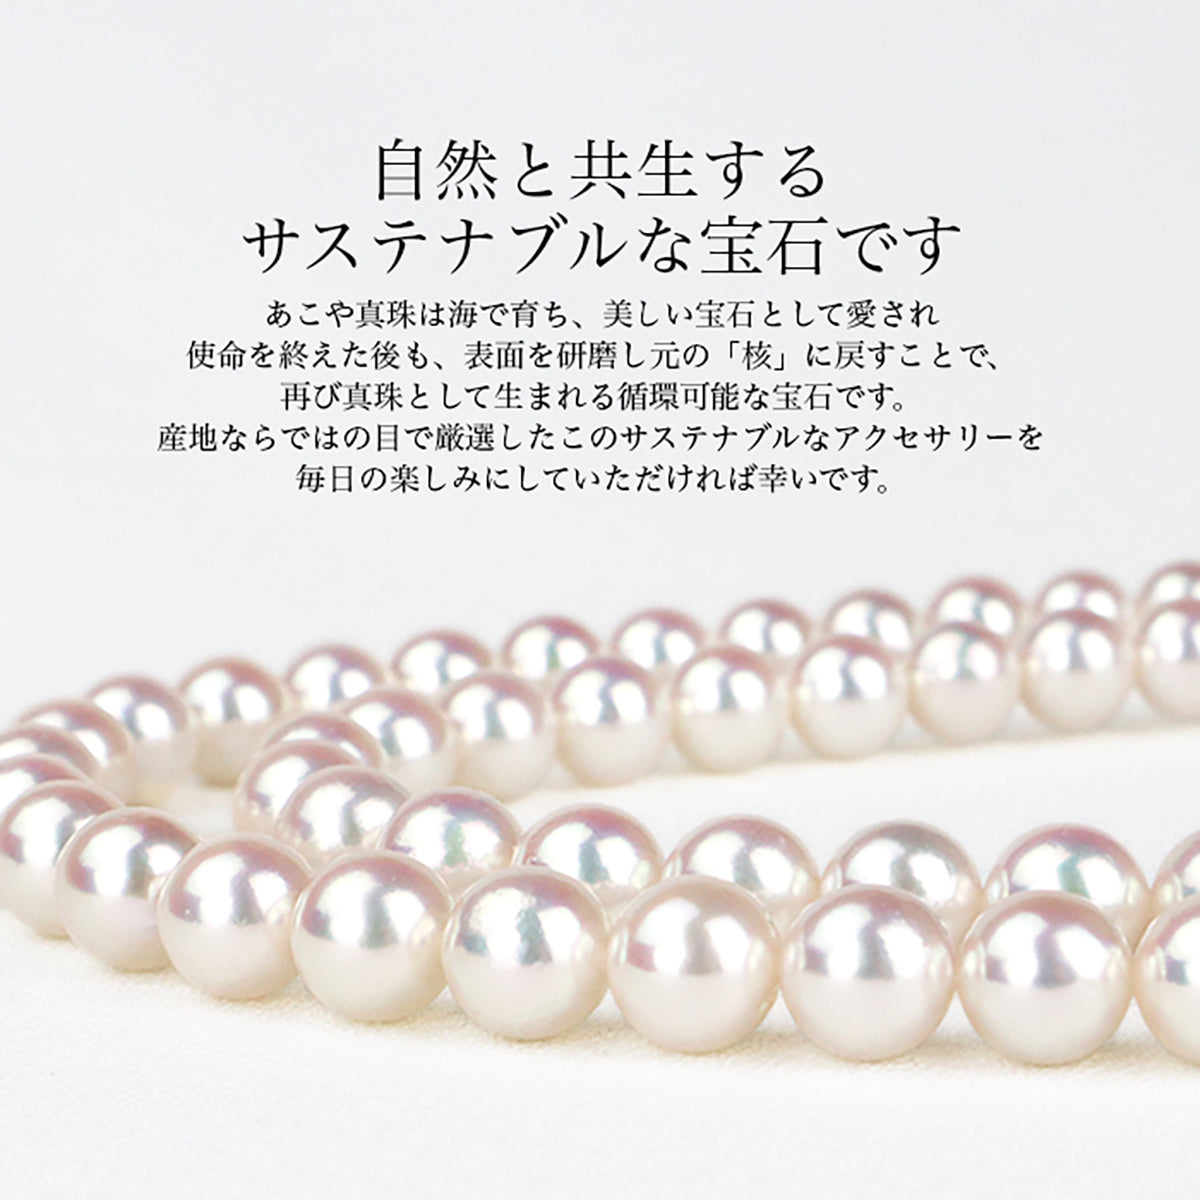 珍珠胸针仙翼黄铜白色 5.0-6.5 毫米日本 Akoya 珍珠带收纳盒 (3925)